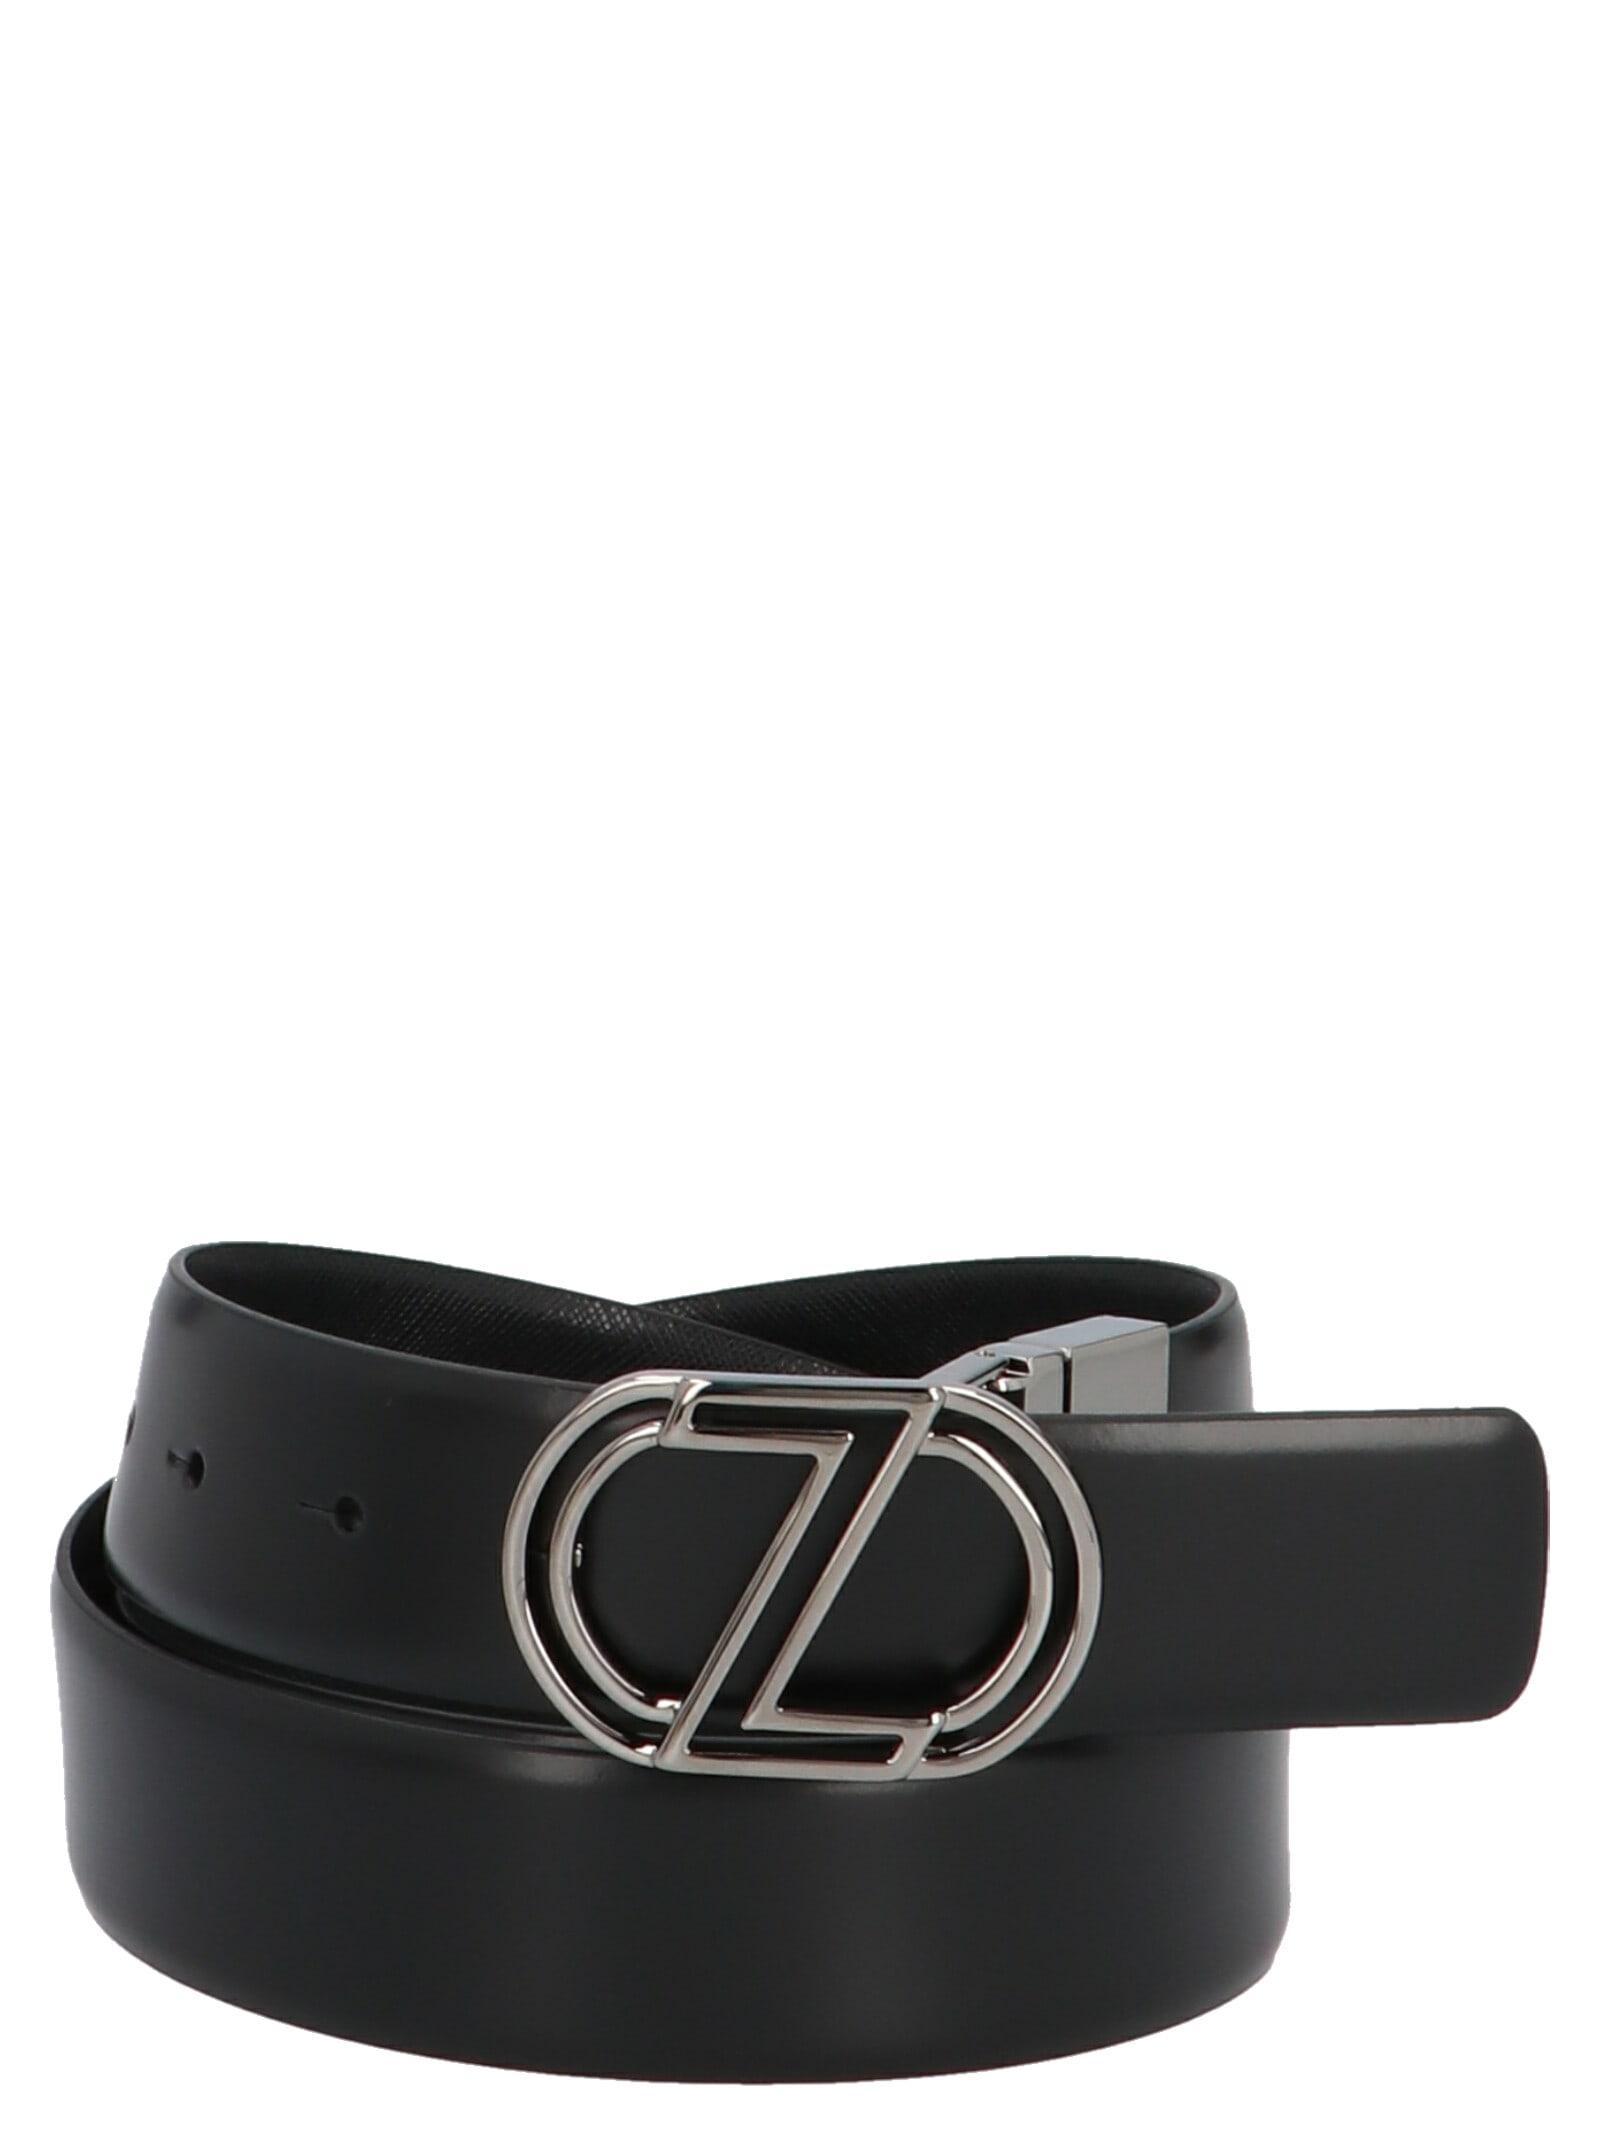 Z Zegna Belt In Black